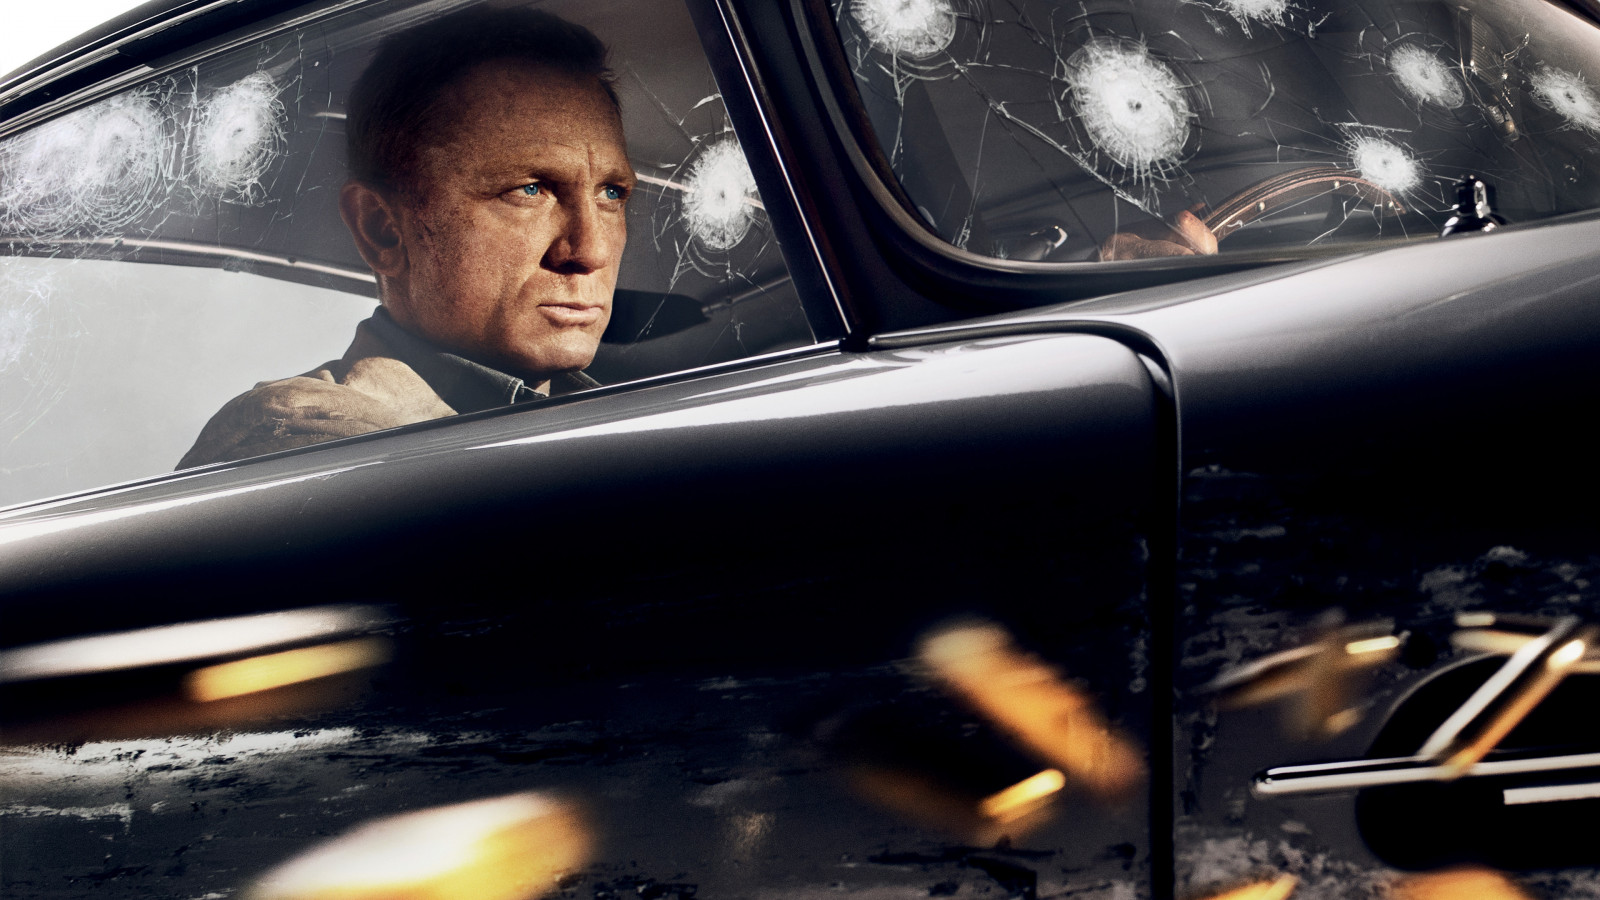 'I migliori James Bond oggi sono i Mission: Impossibile', lo scrittore Charlie Higson boccia No Time To Die